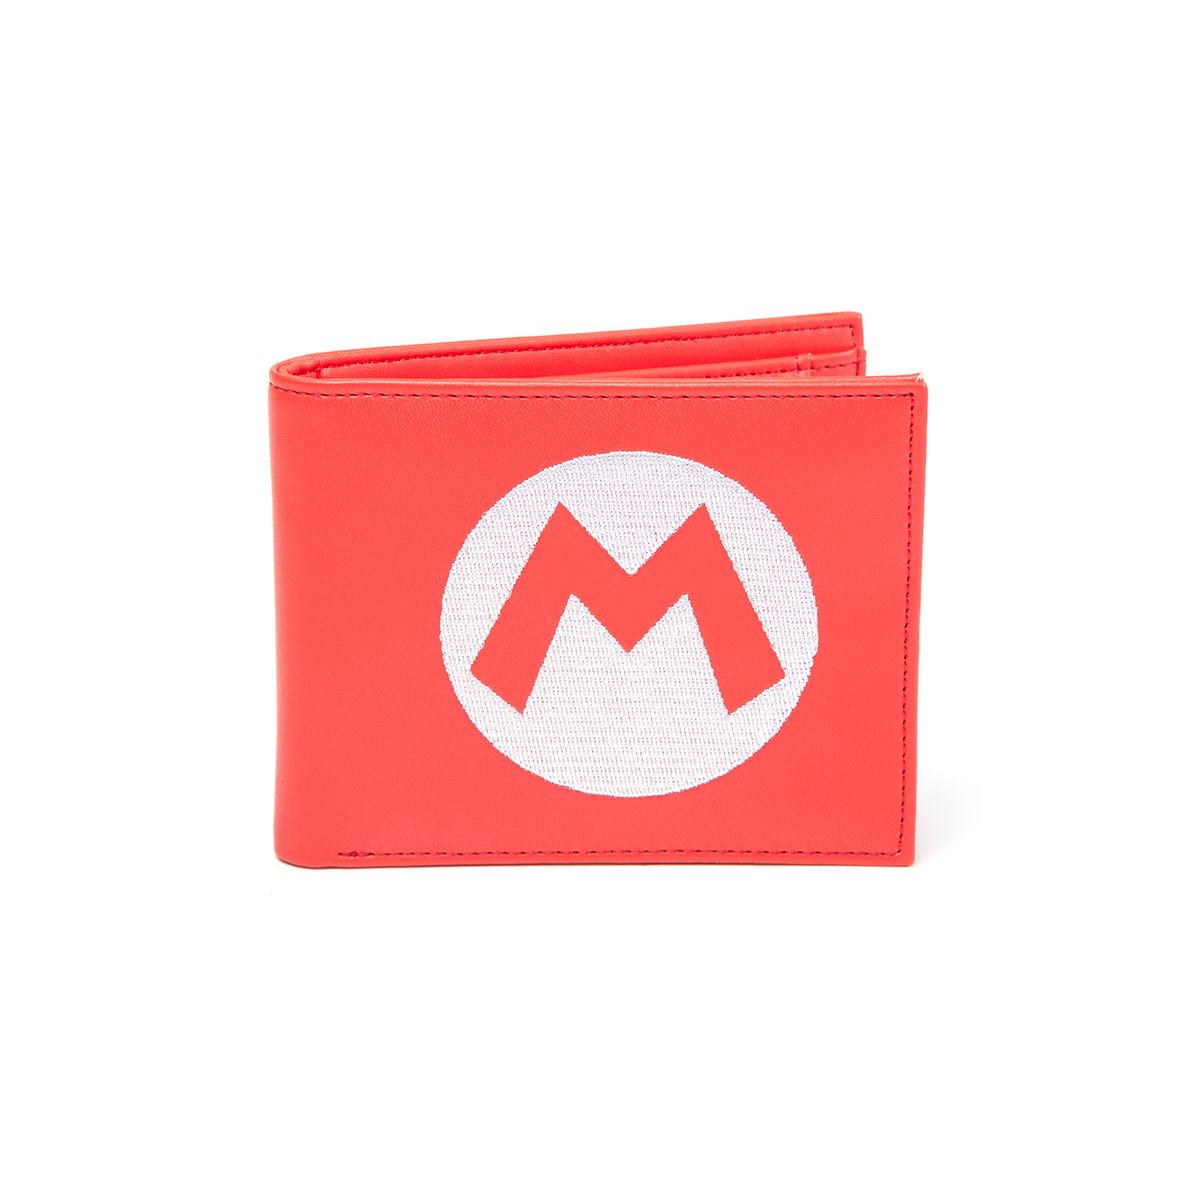 Bioworld Nintendo Super Mario Red Wallet